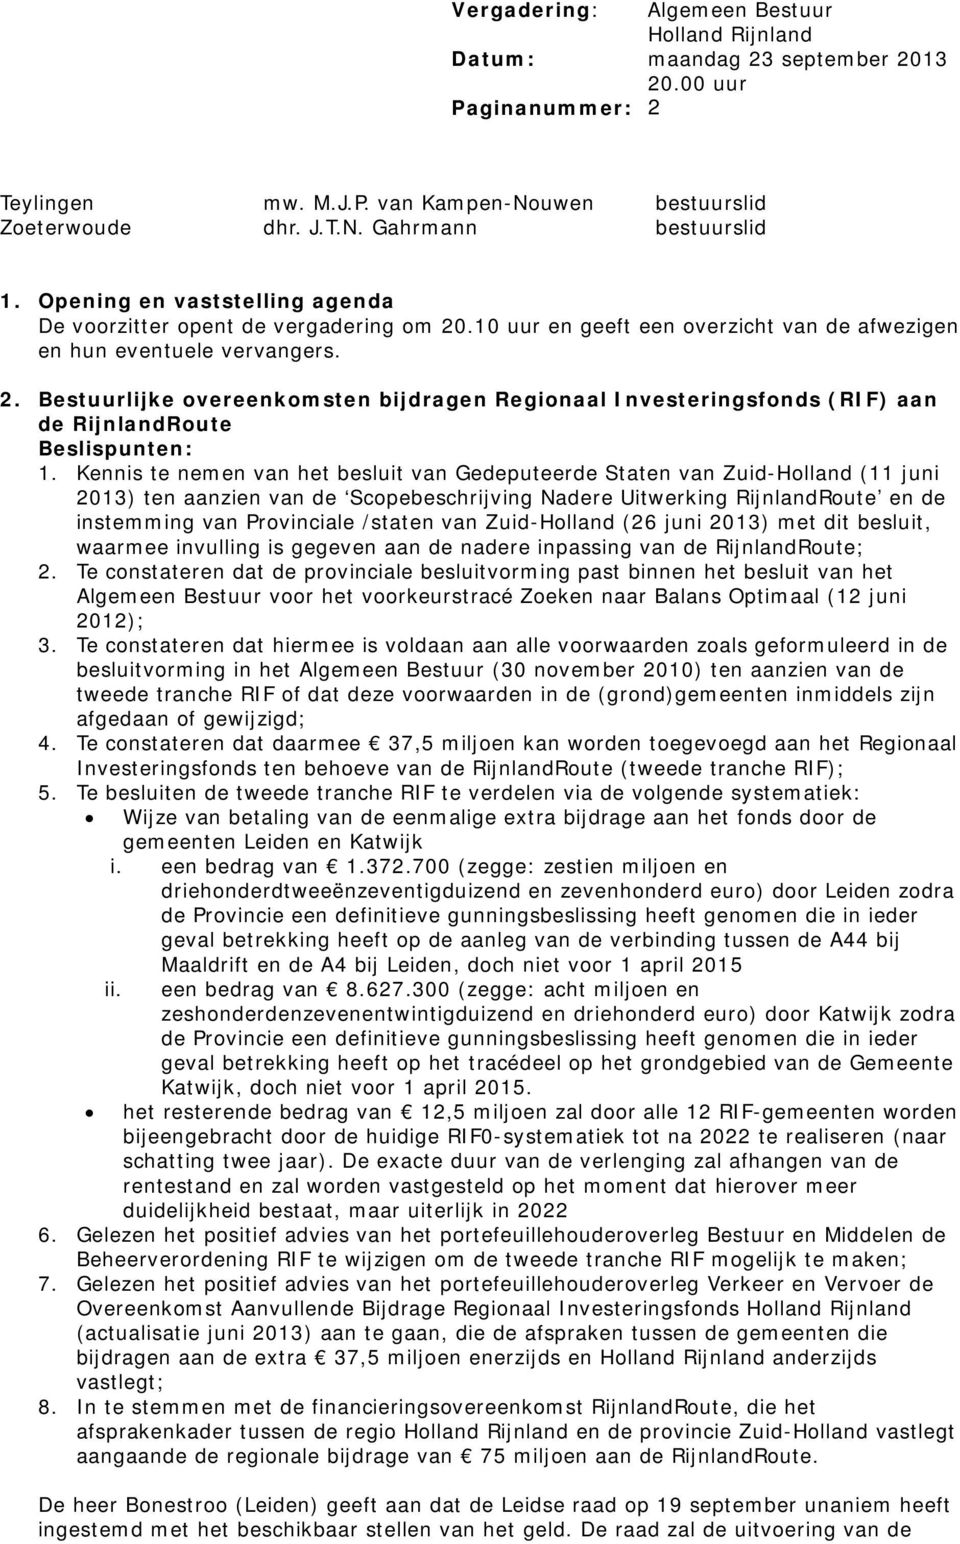 Kennis te nemen van het besluit van Gedeputeerde Staten van Zuid-Holland (11 juni 2013) ten aanzien van de Scopebeschrijving Nadere Uitwerking RijnlandRoute en de instemming van Provinciale /staten